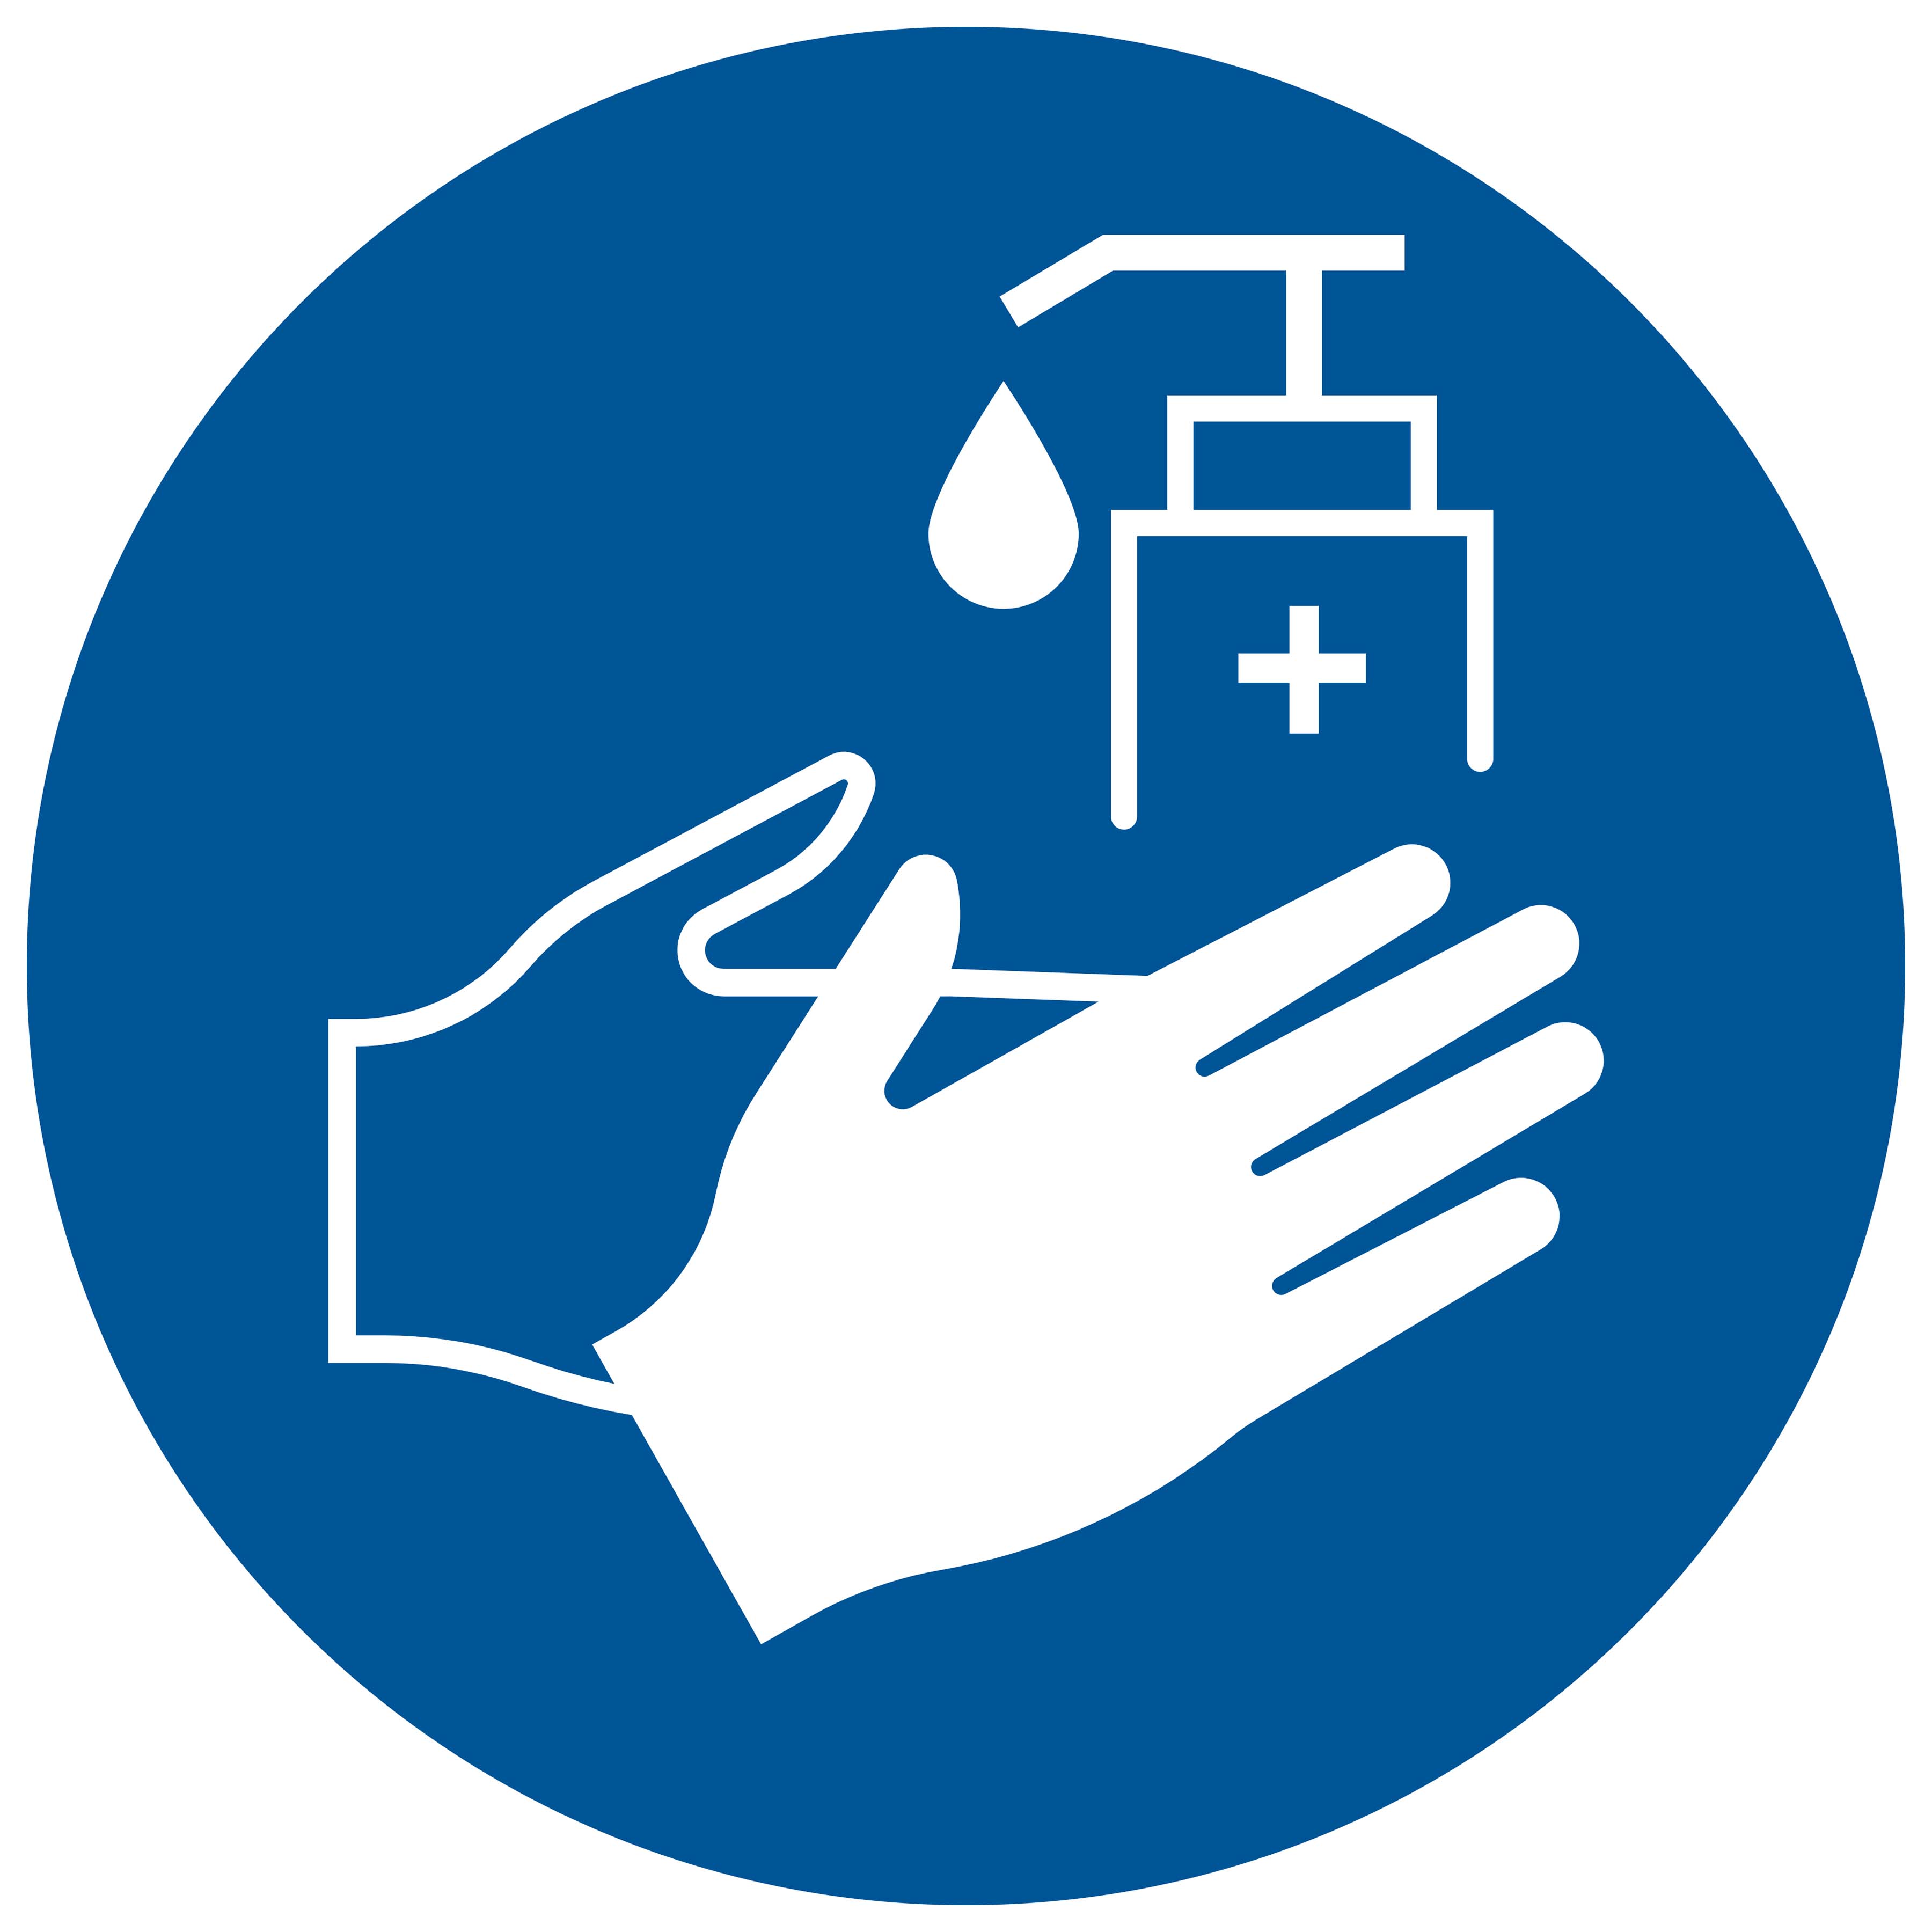 Pickup sticker Handen desinfecteren verplicht - Disinfect hands required - Désinfection des mains requise - Hände desinfizieren erforderlich - social distance  